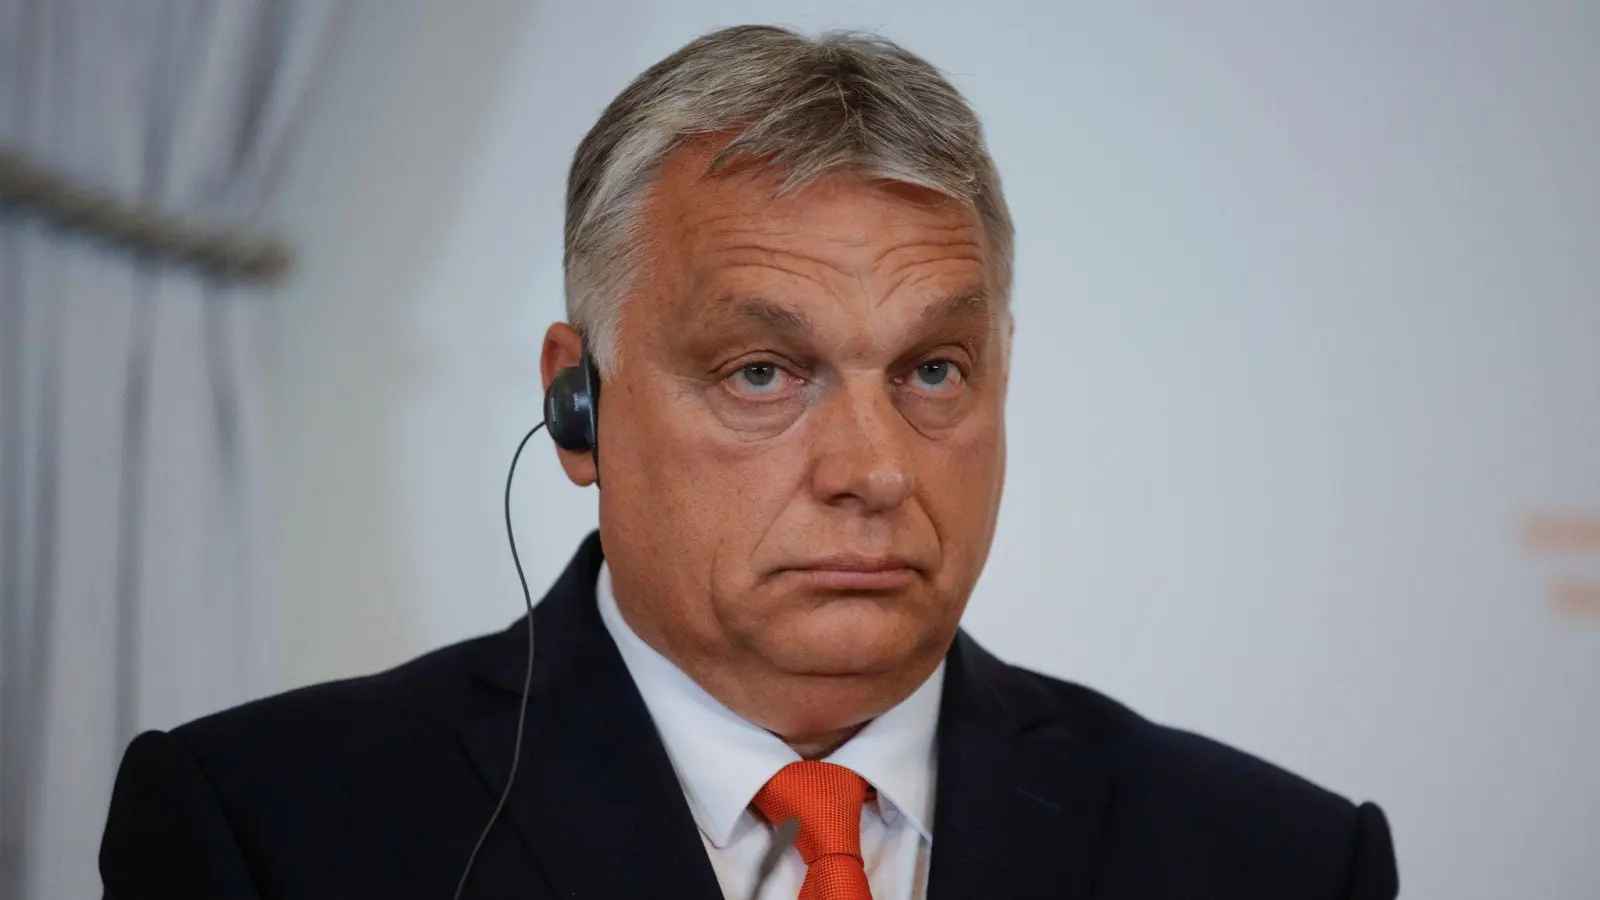 Viktor Orban steht wegen seiner rassistischen Äußerungen in der Kritik. (Foto: Theresa Wey/AP/dpa)